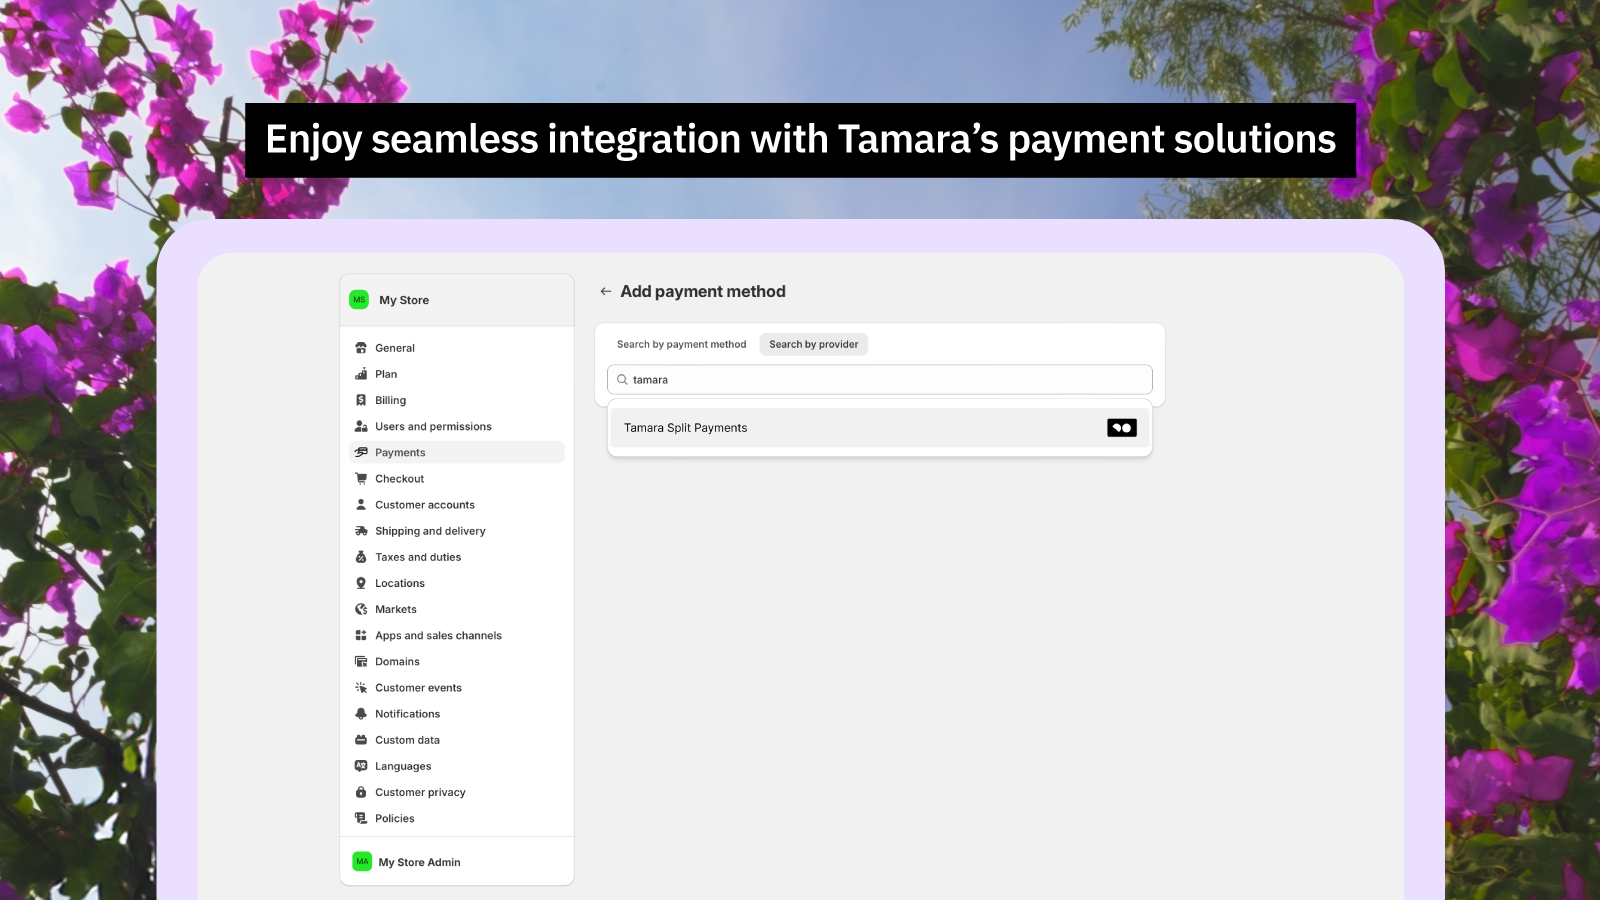 Desfrute de integração contínua com as soluções de pagamento da Tamara